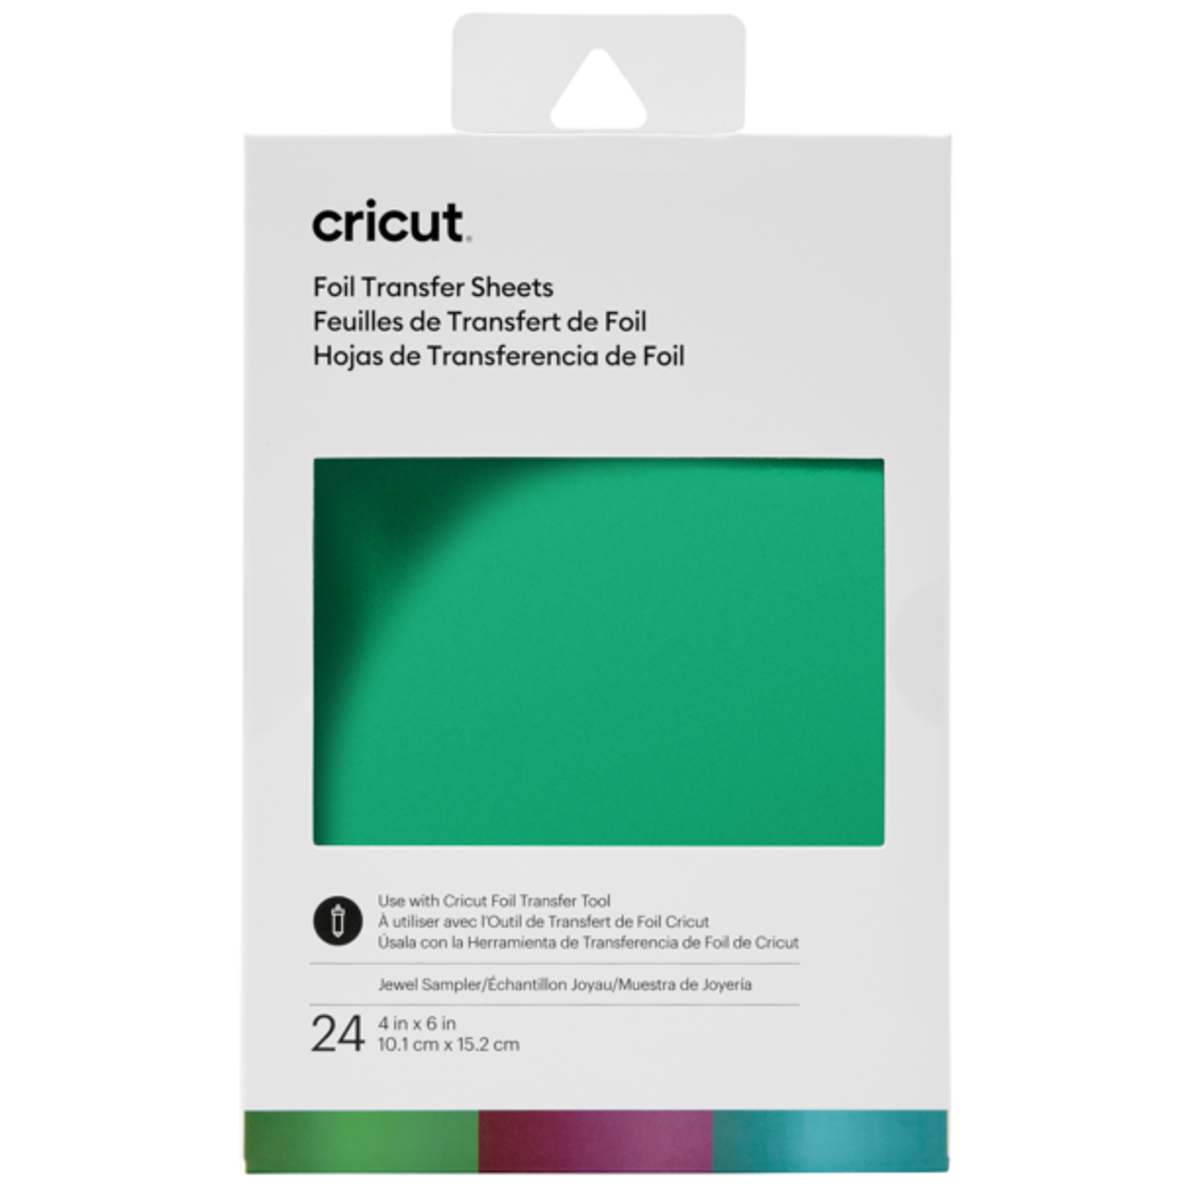 cricut-foil-transfer-kit